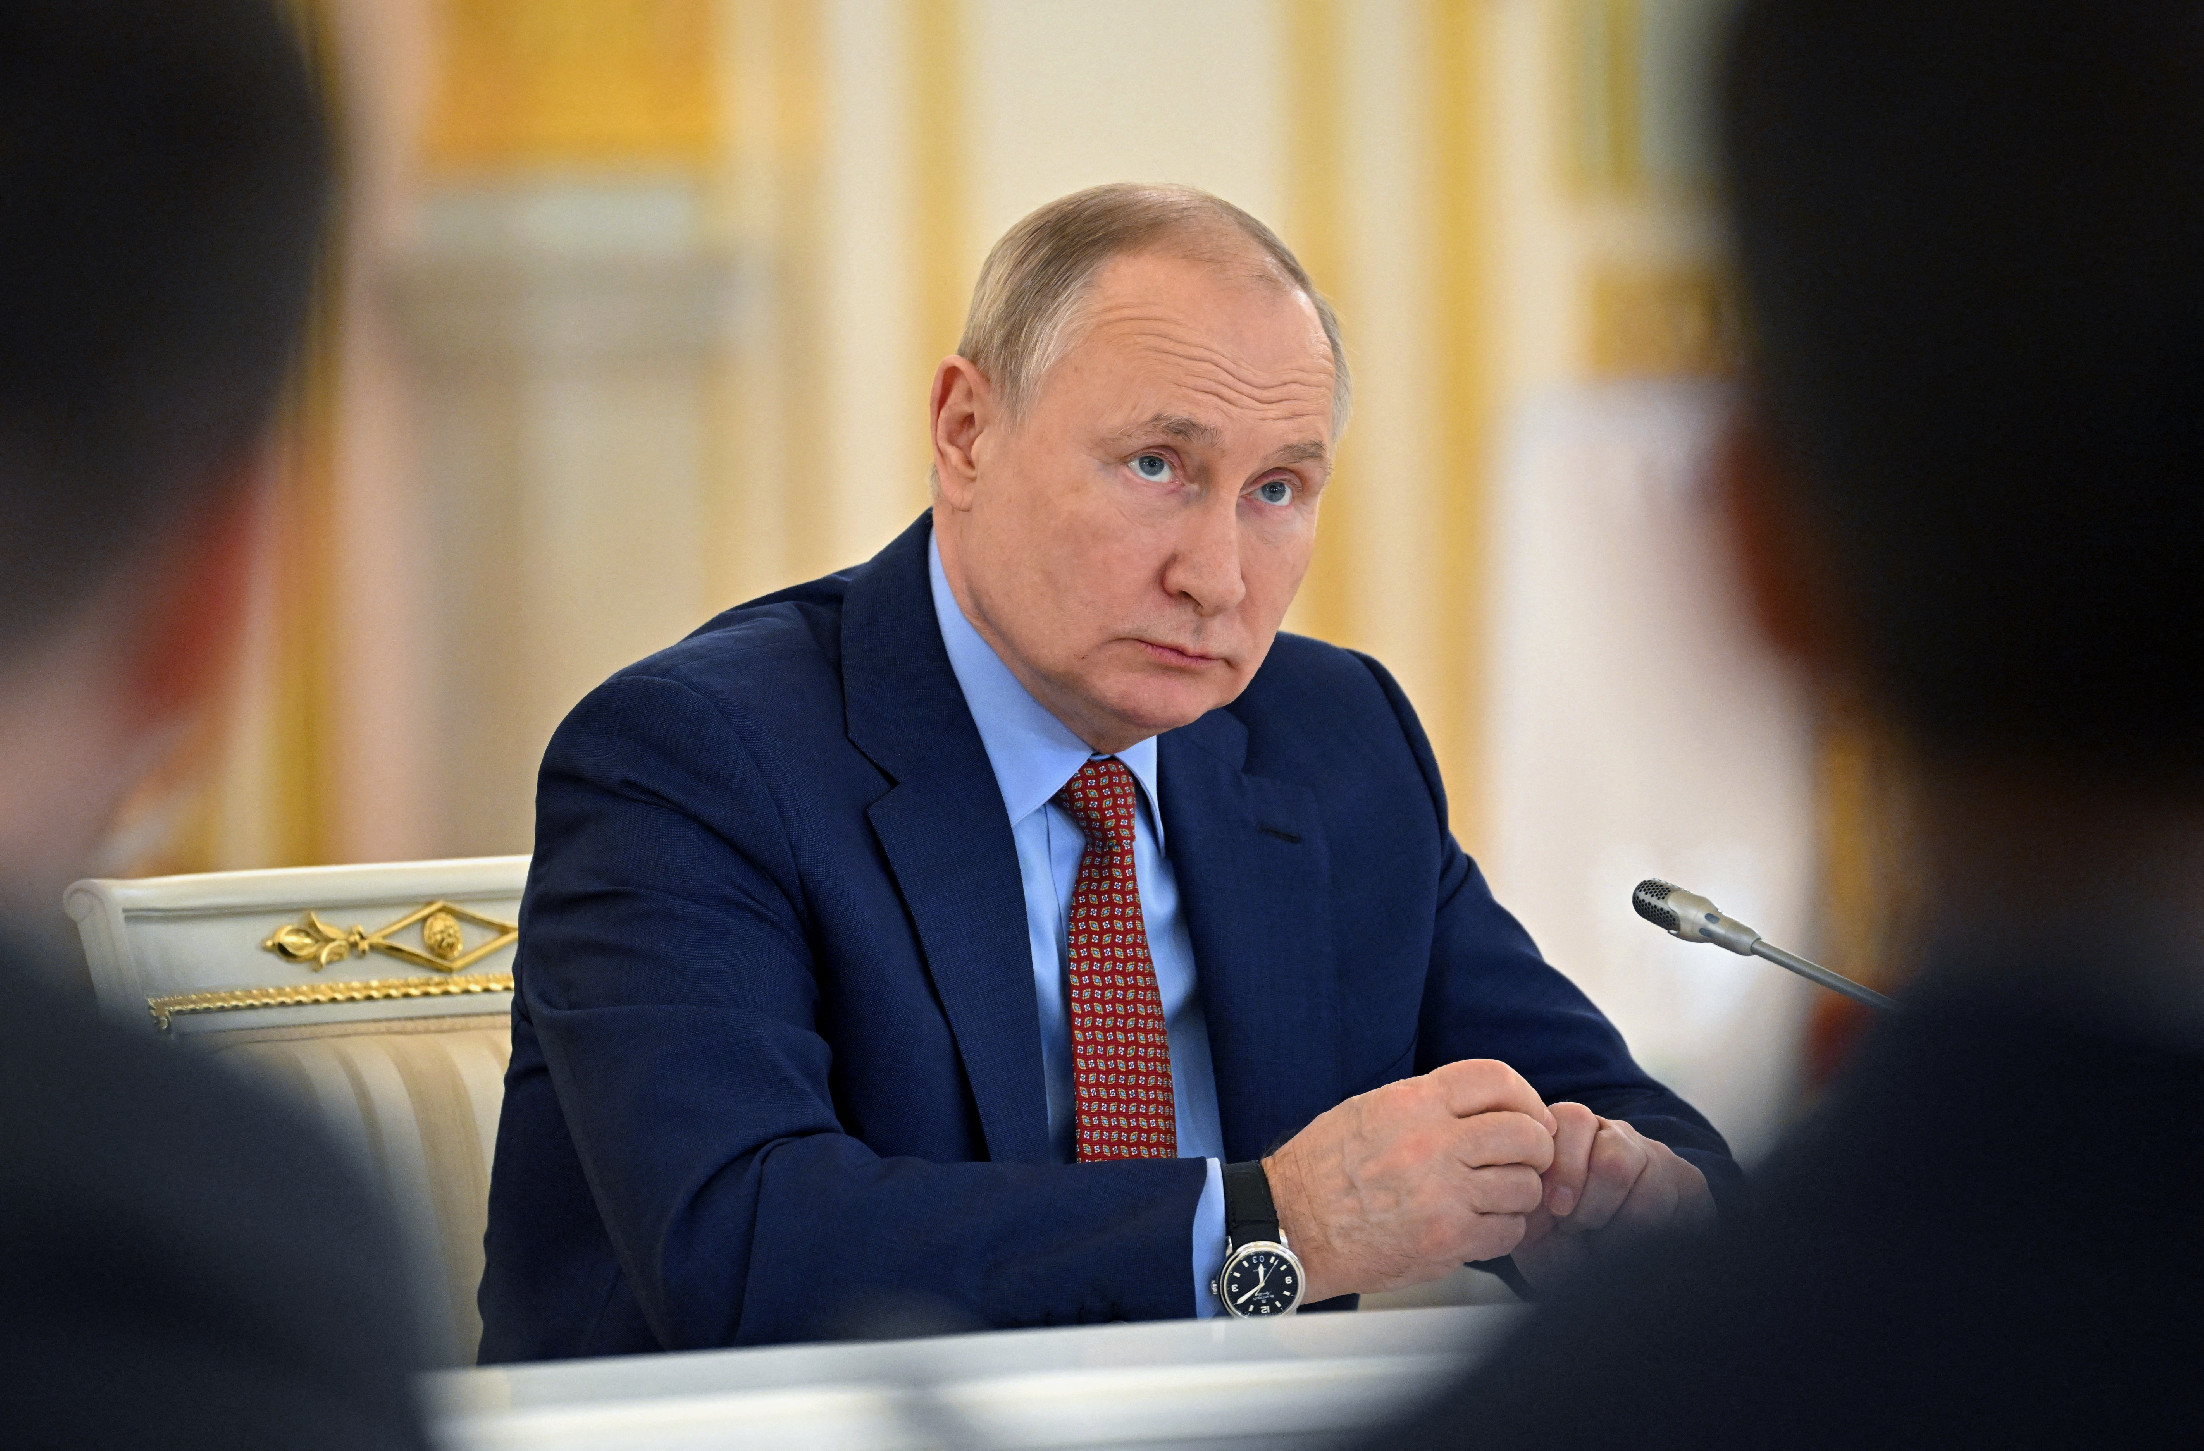 Megdöbbentő titok került elő a múltból arról, Vlagyimir Putyin hogyan jegyezte el a feleségét